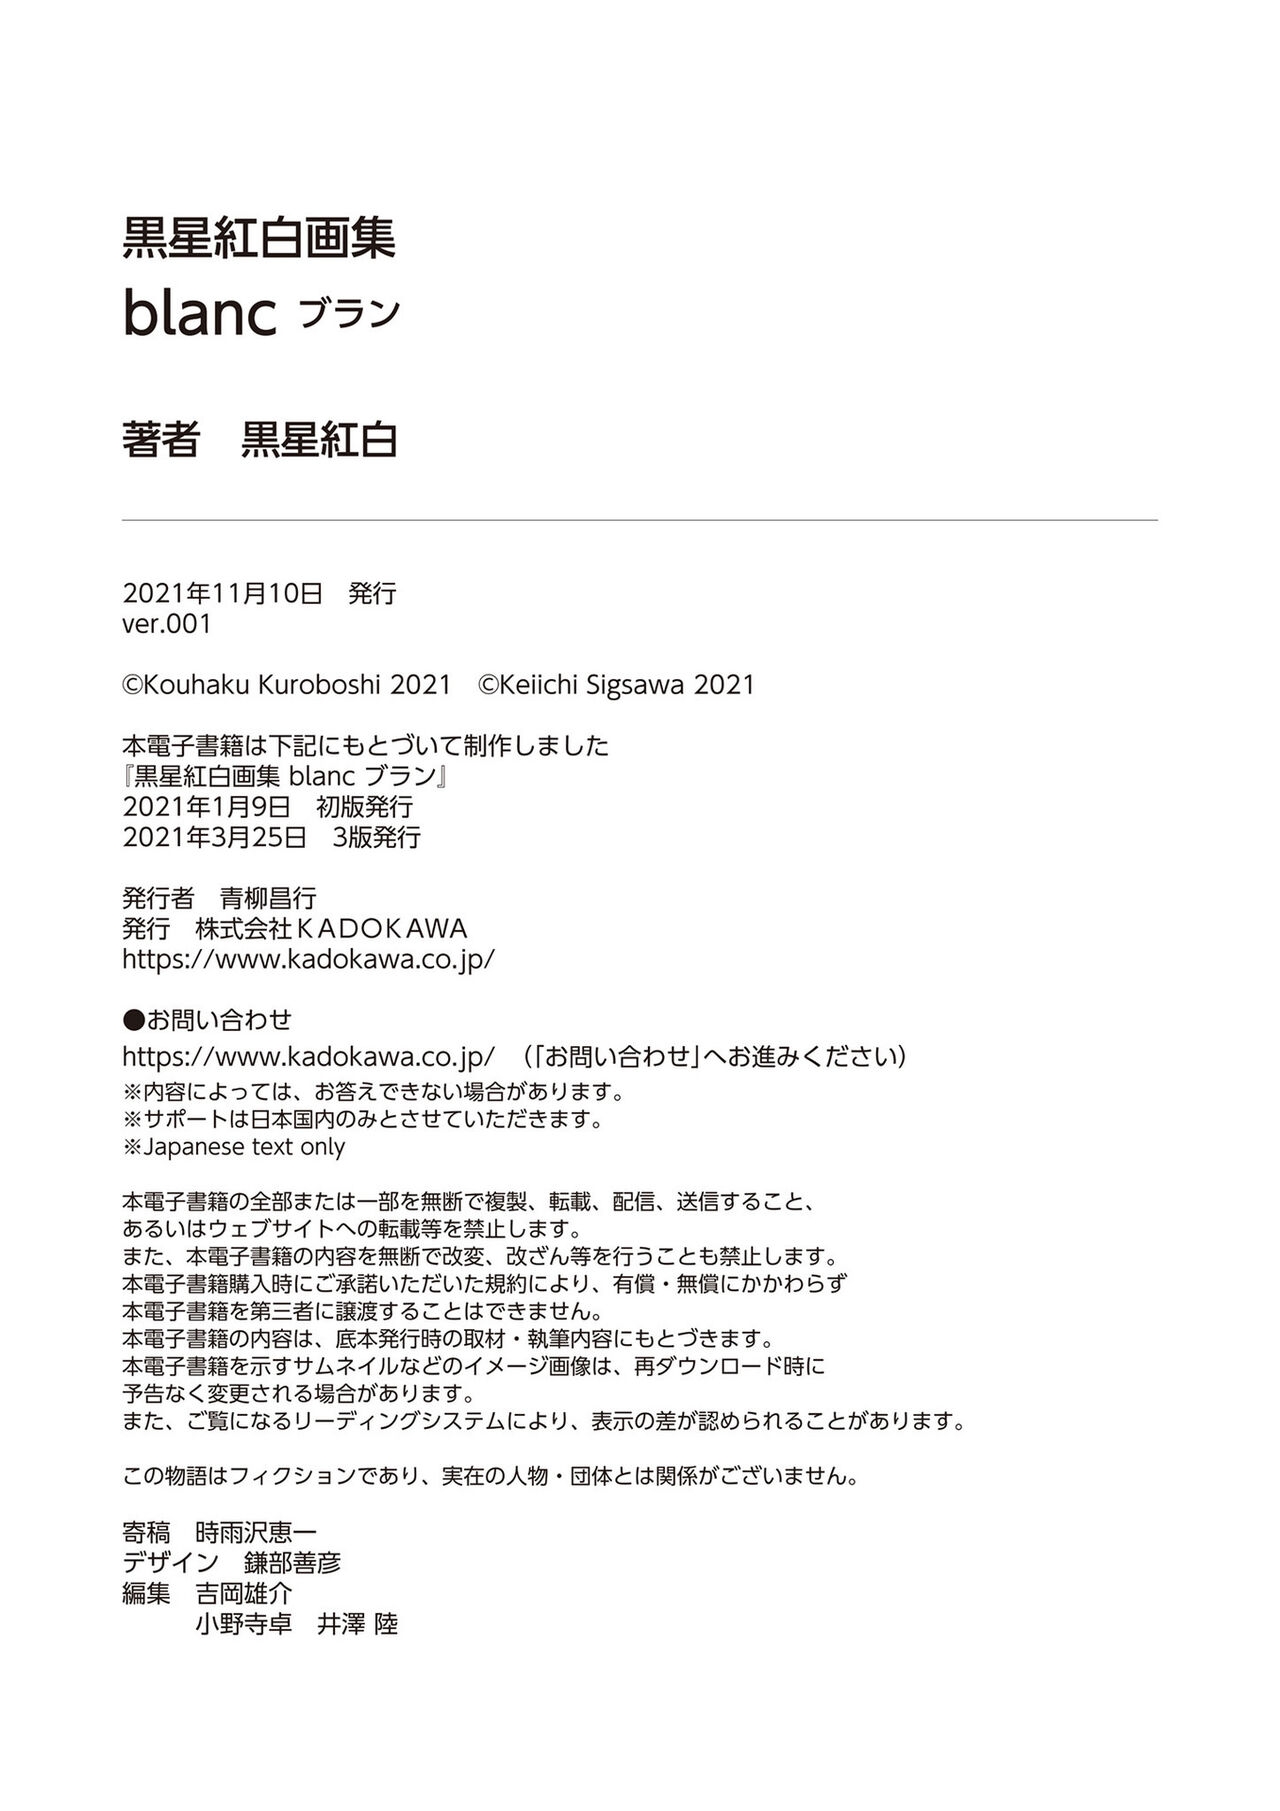 Kuroboshi Kohaku Blanc Art Book 206